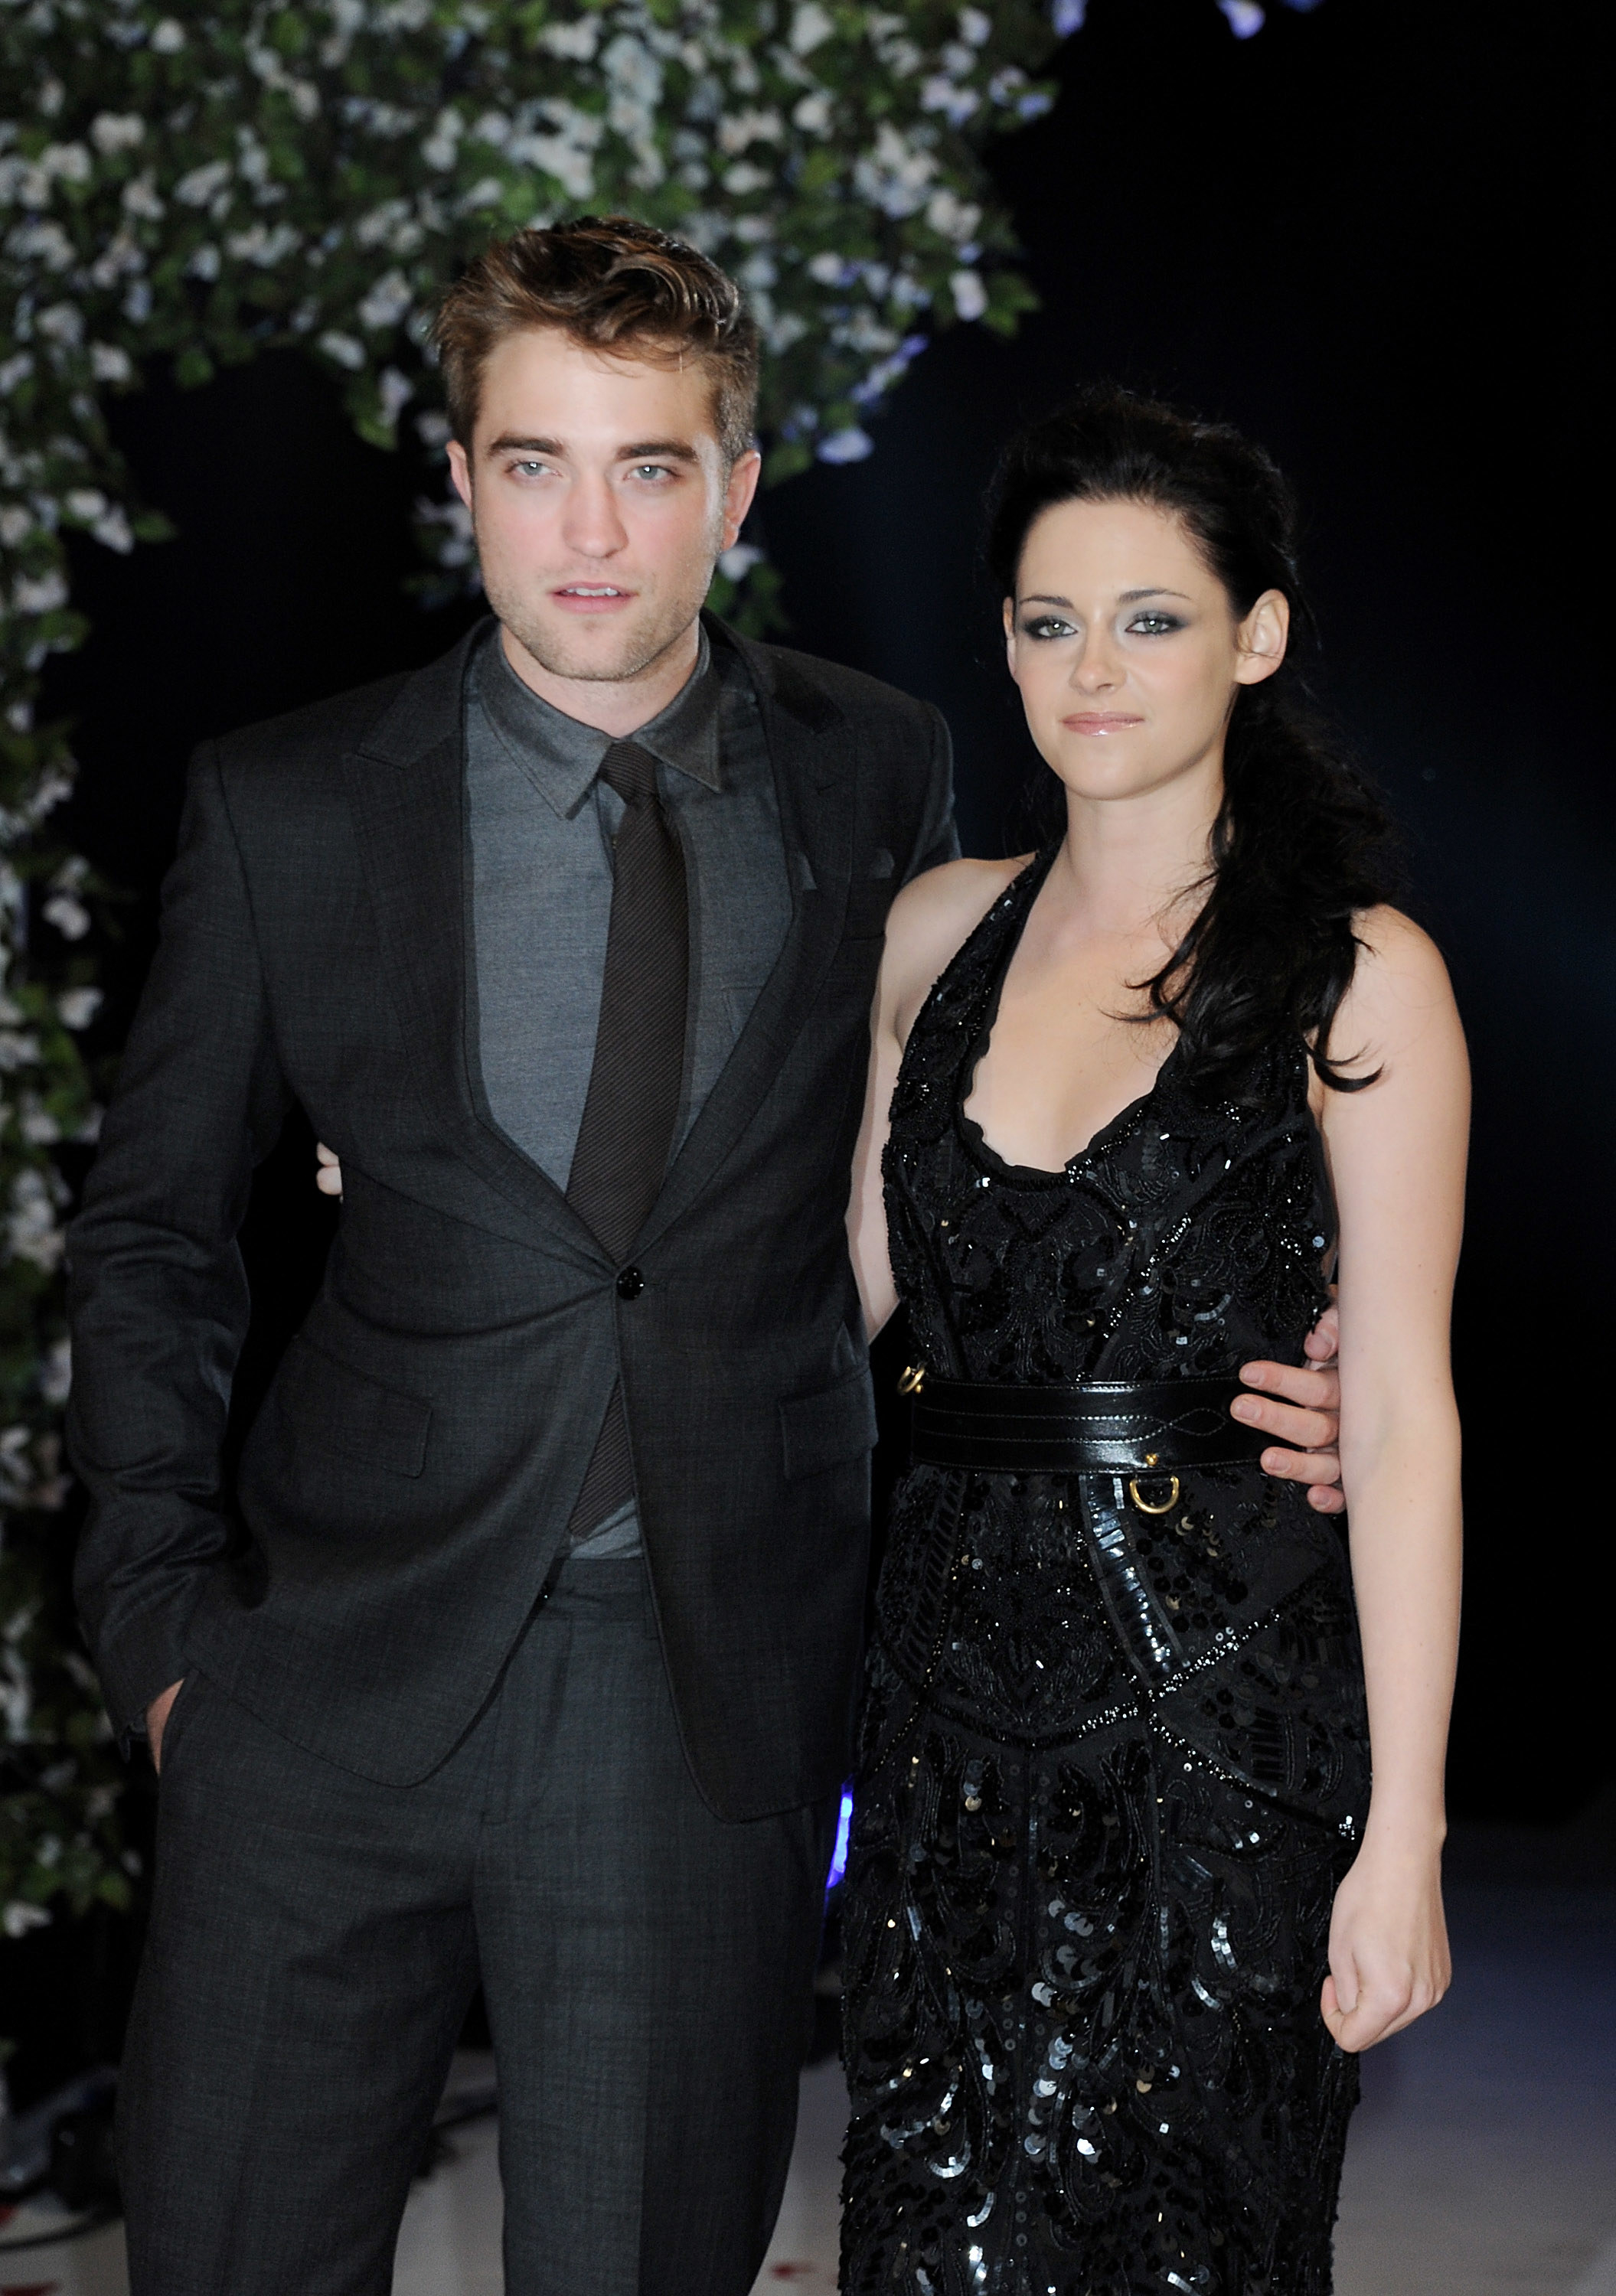 Kristen Stewart and Robert Pattinson on the red carpet